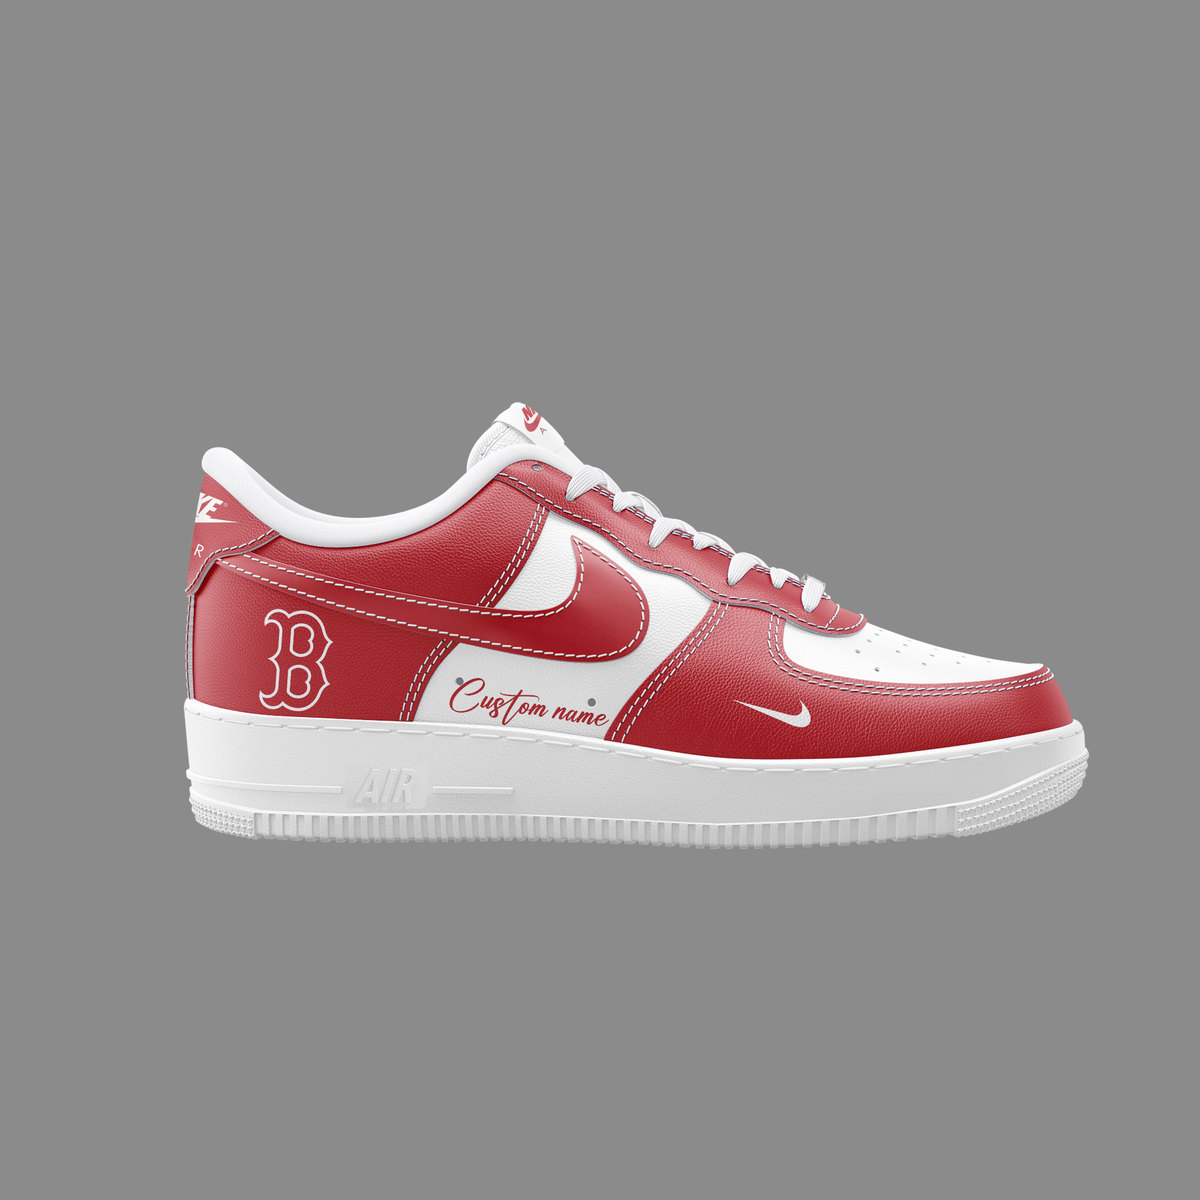 Boston Red Sox Custom Name Air Force 1 Sneaker